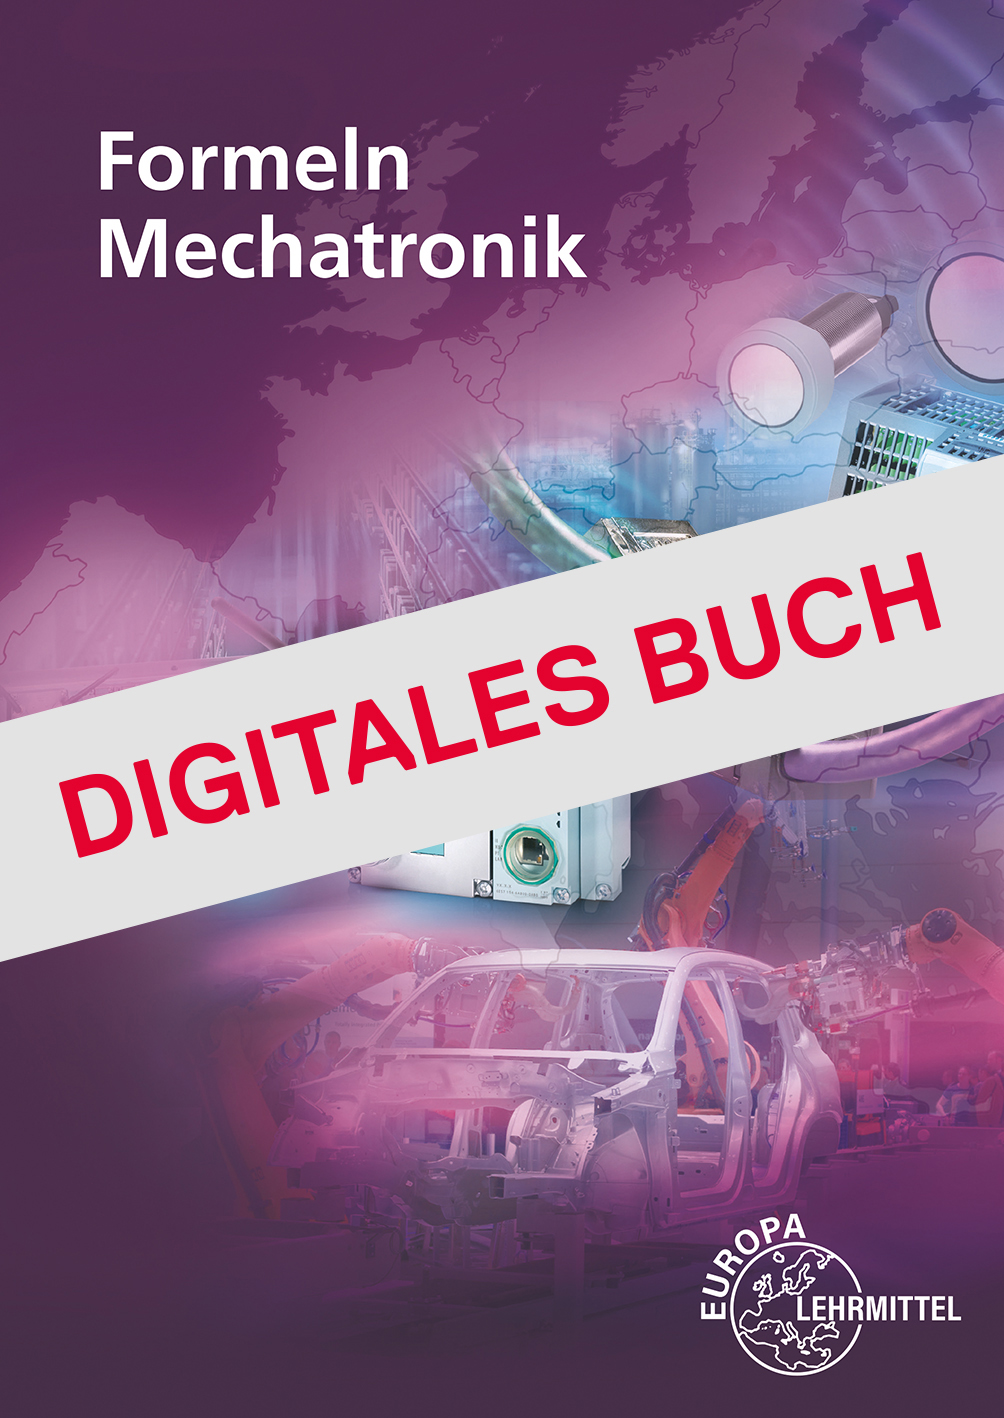 Formeln für Mechatroniker - Digitales Buch